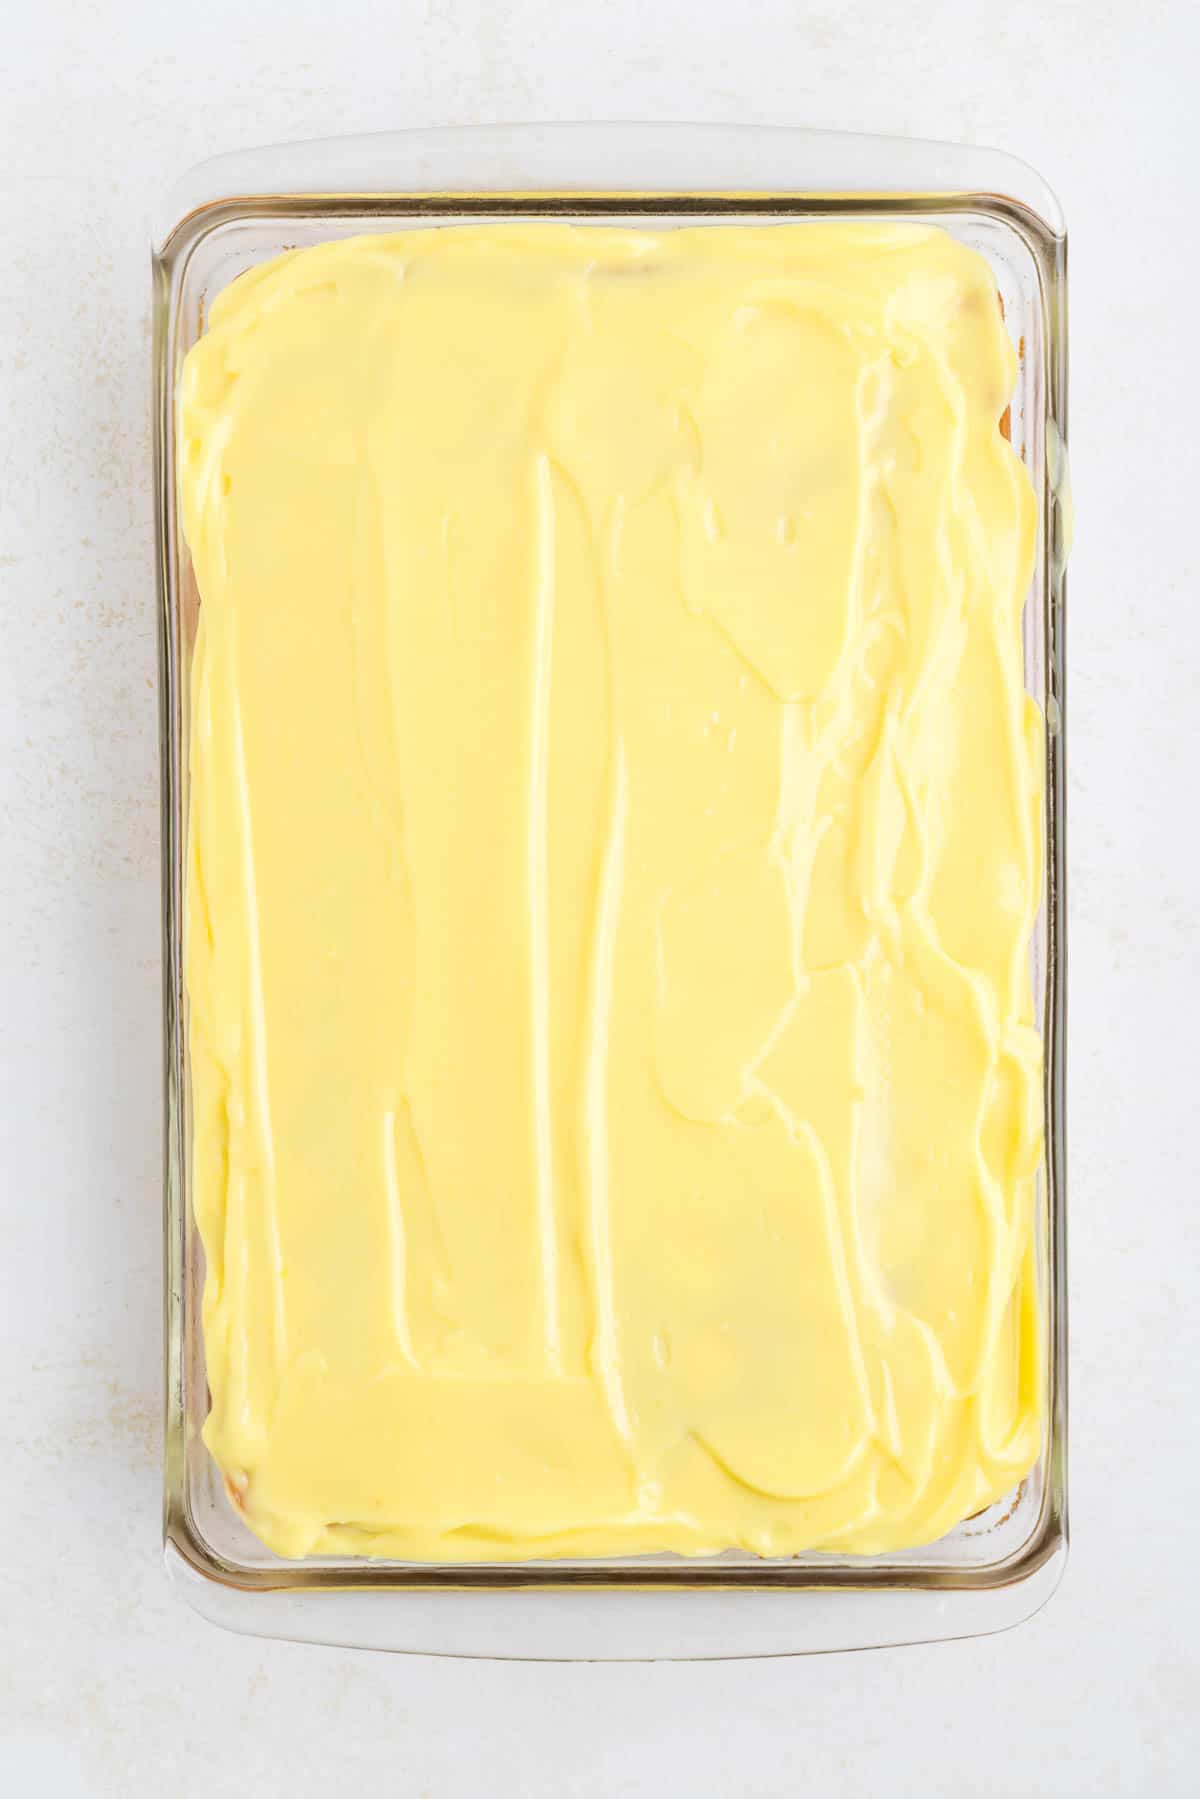 lemon pudding spread over lemon cake